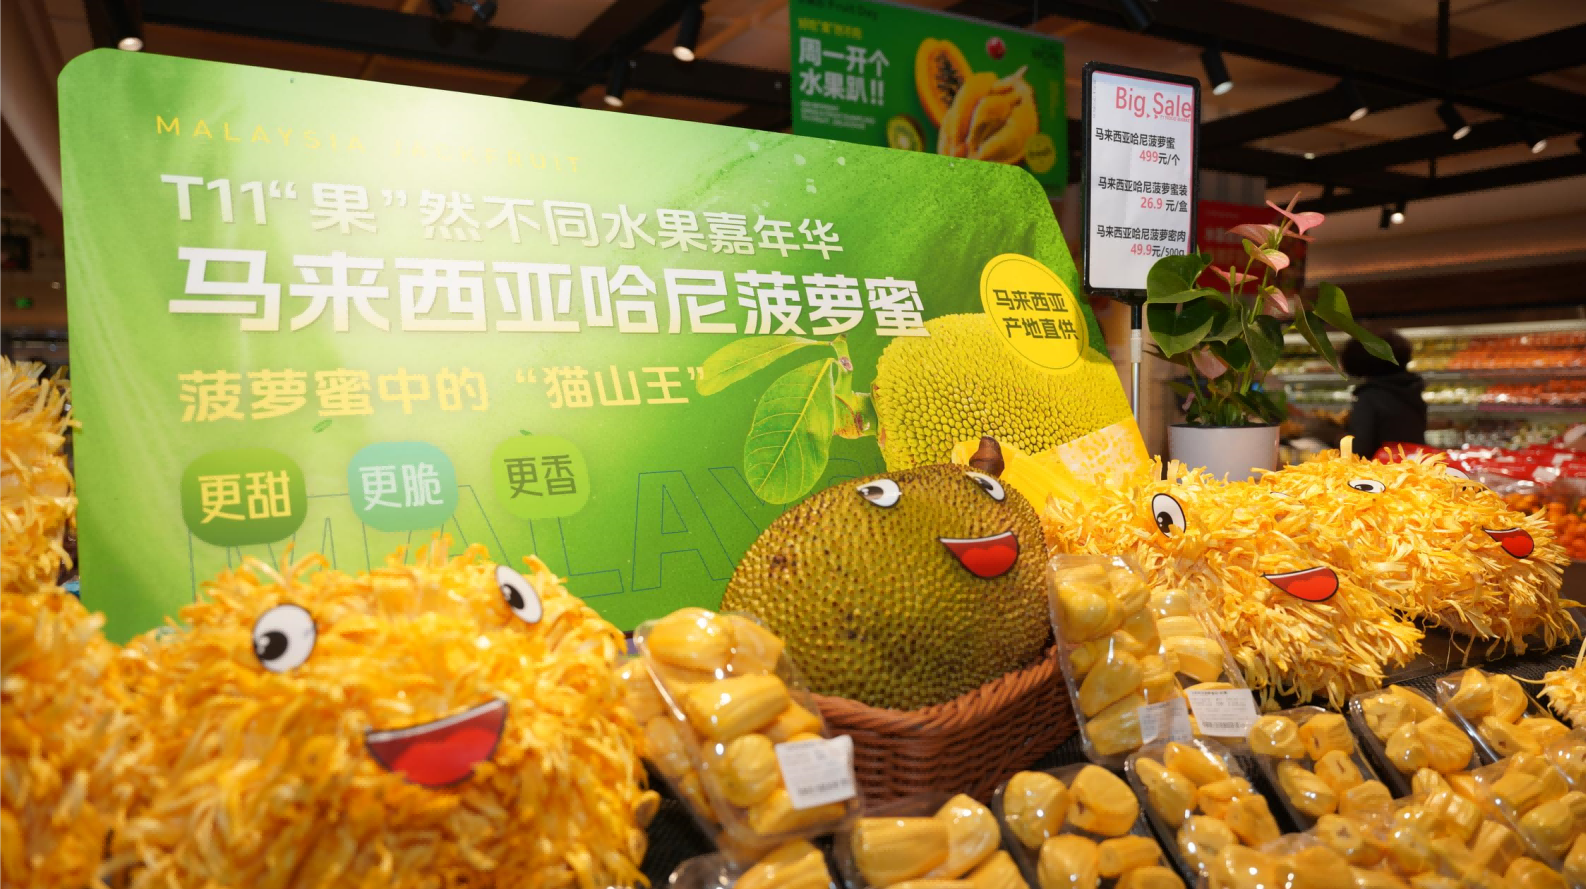 T11生鲜超市扩大全球直供水果业务，合作马来西亚驻华使馆农业处成功引进哈尼菠萝蜜